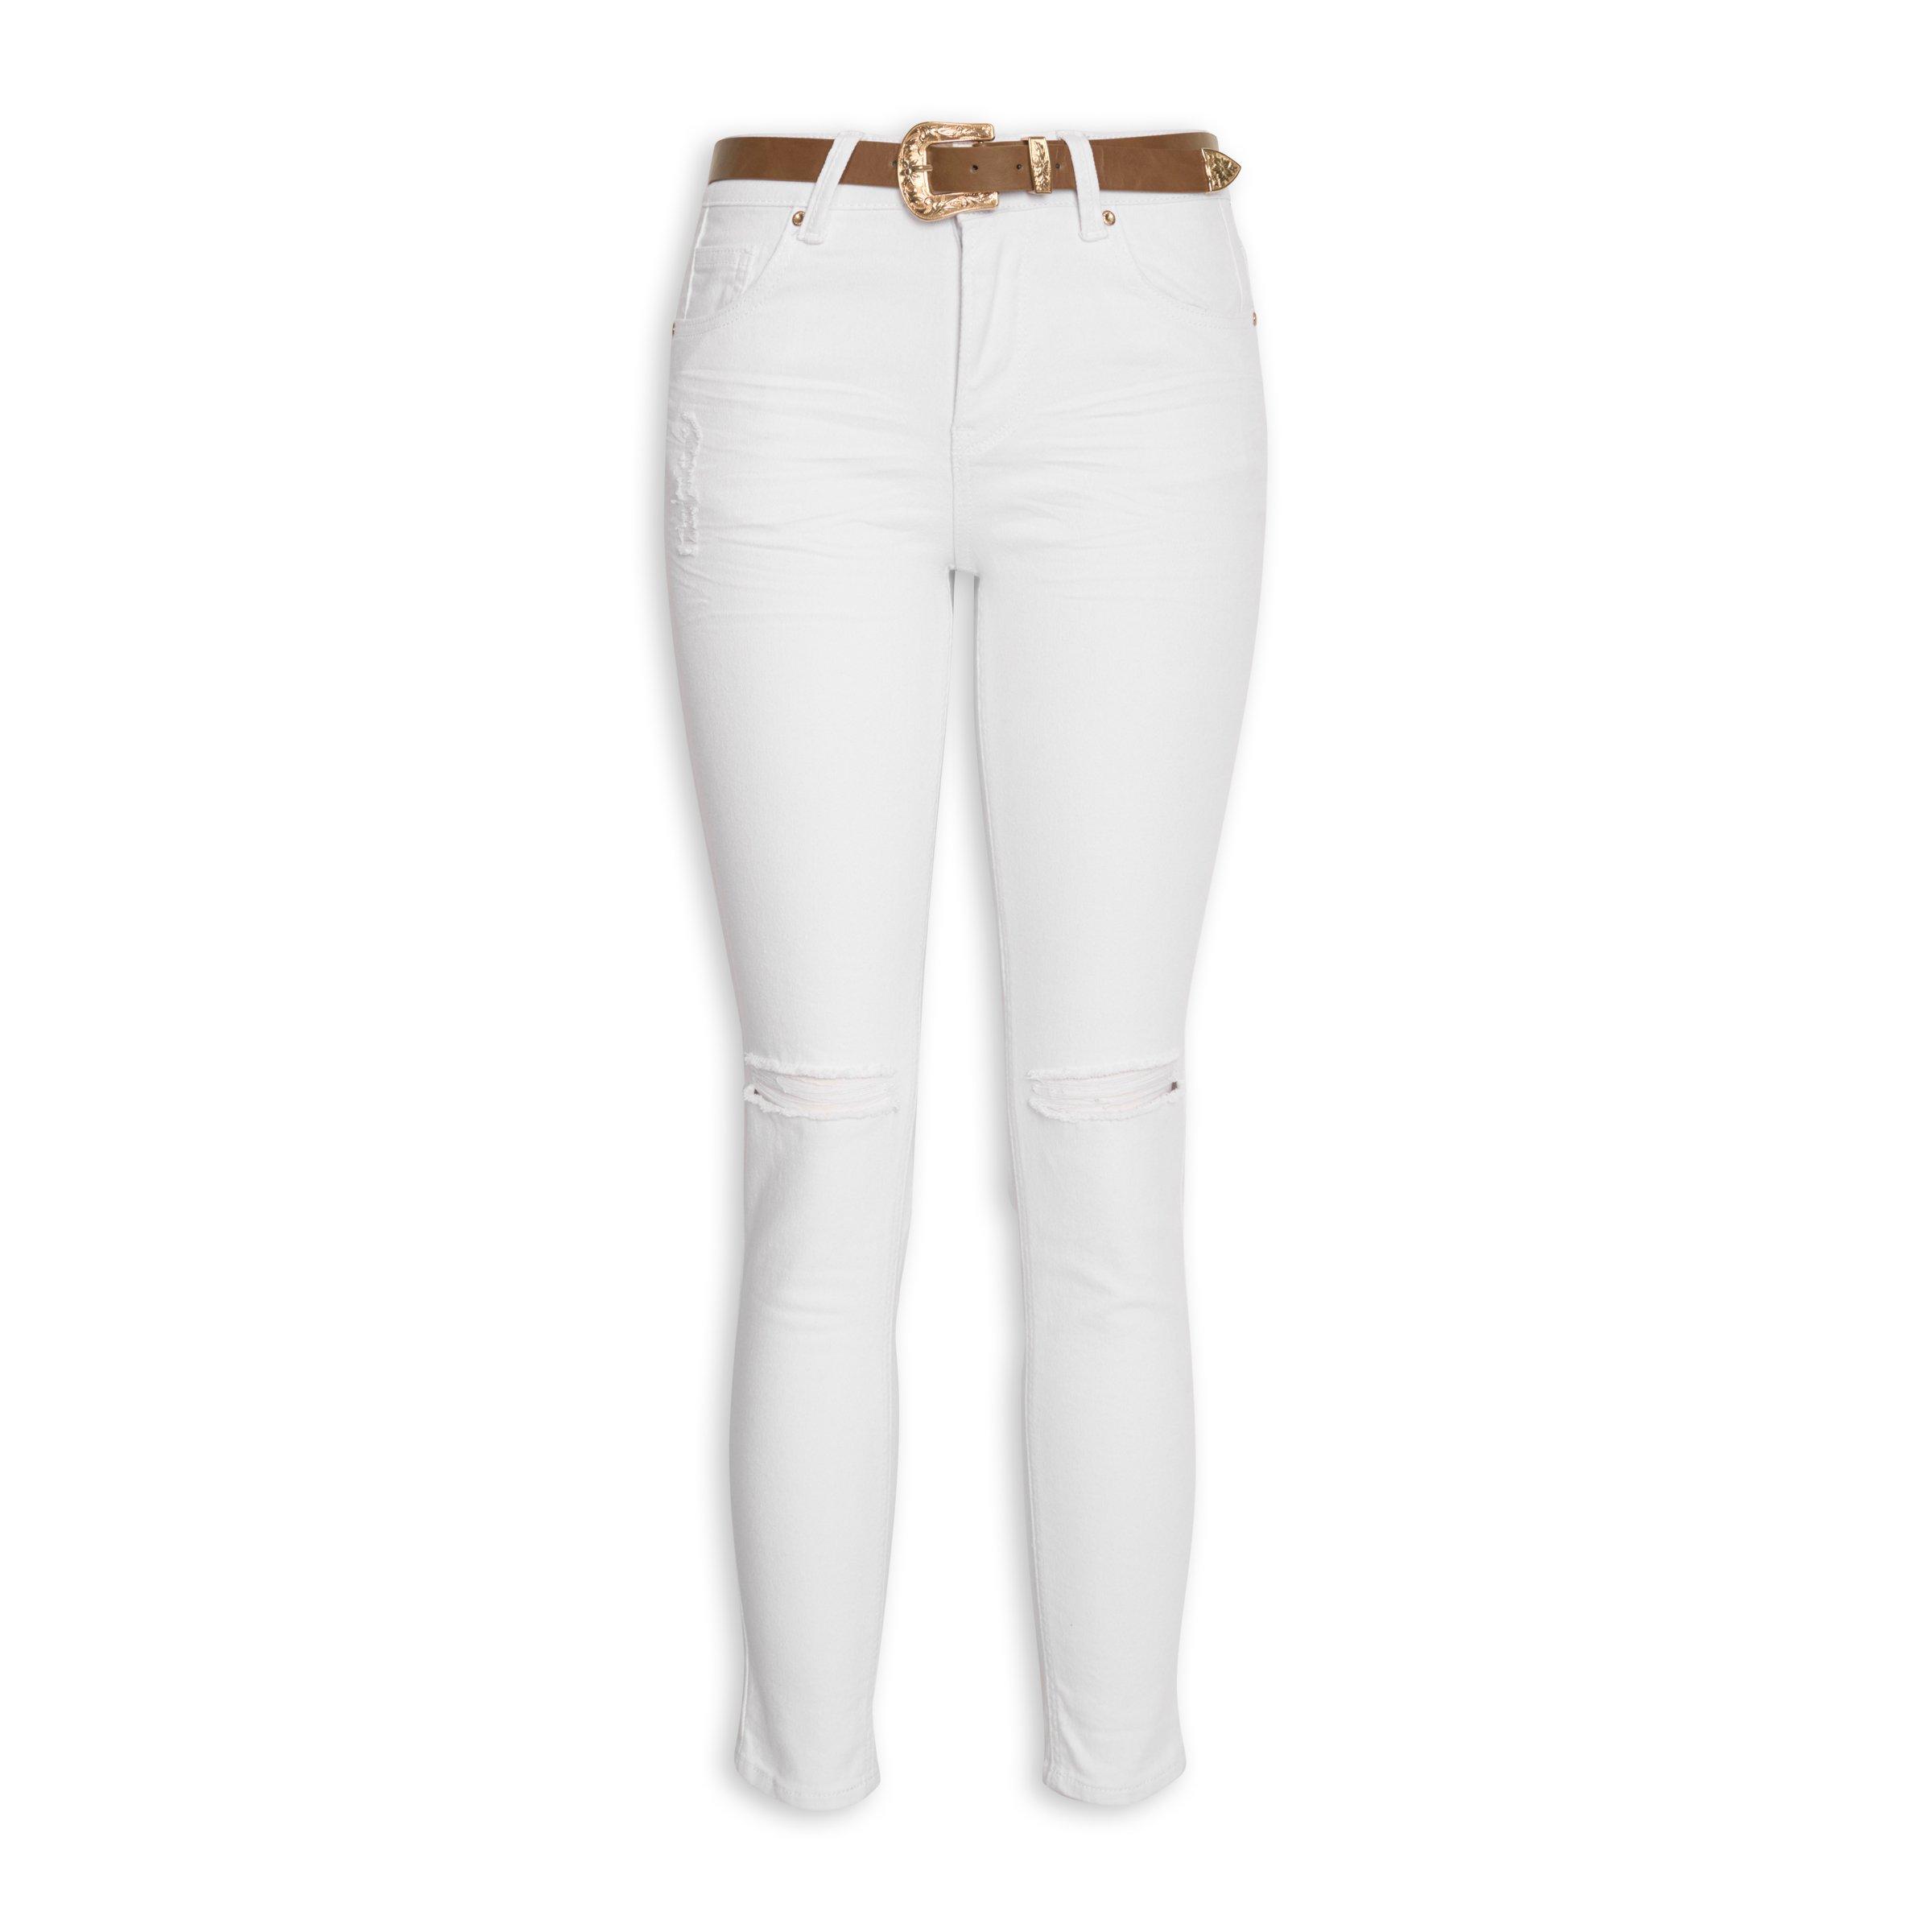 Buy OBR White Belted Skinny Jeans Online | Truworths